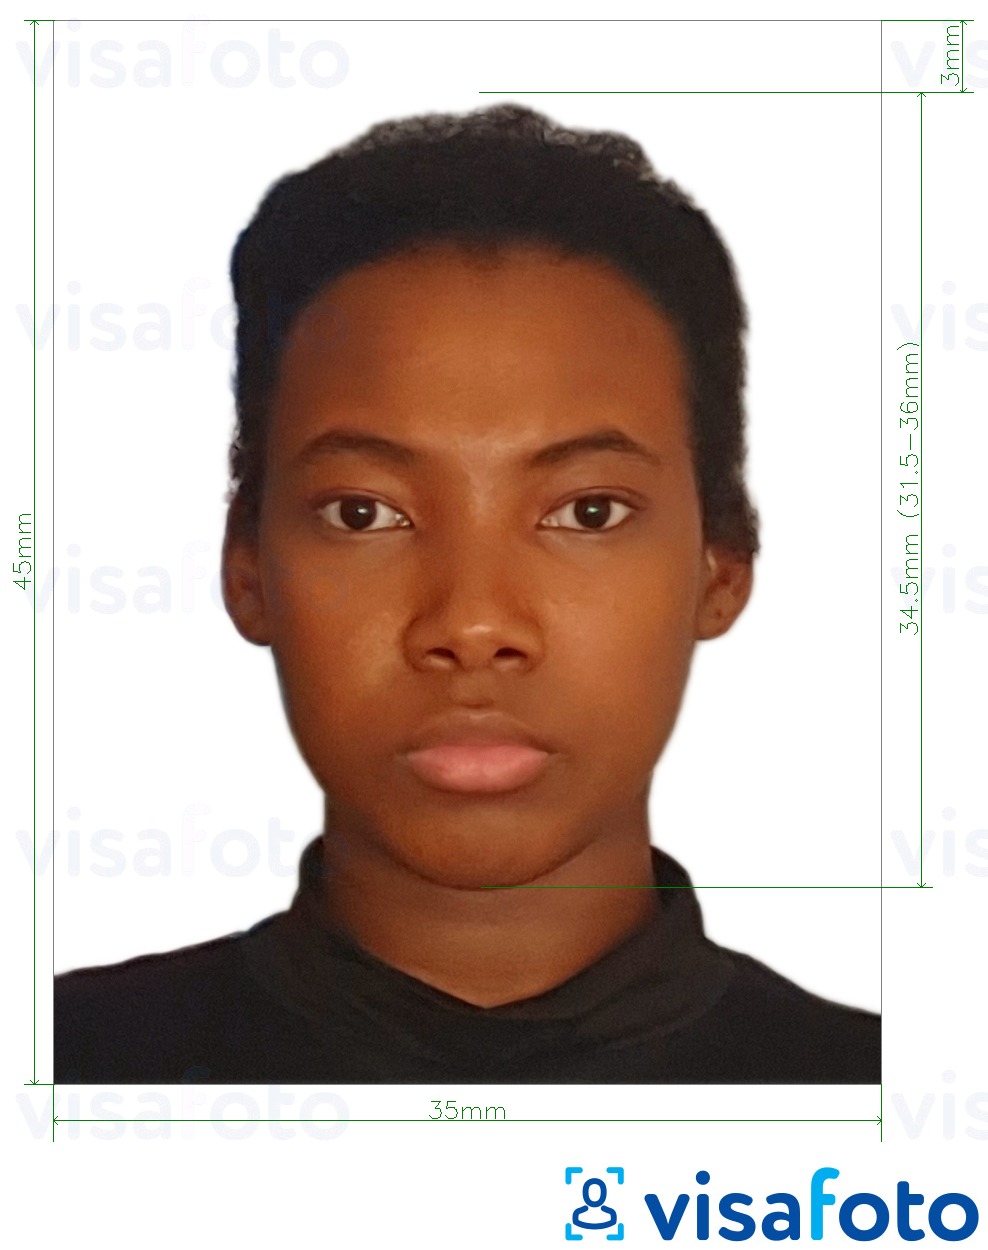 Exemples sur des photos pour Passeport Guyana 45x35 mm (1,77 x 1,38 pouces) avec les spécifications de taille exactes